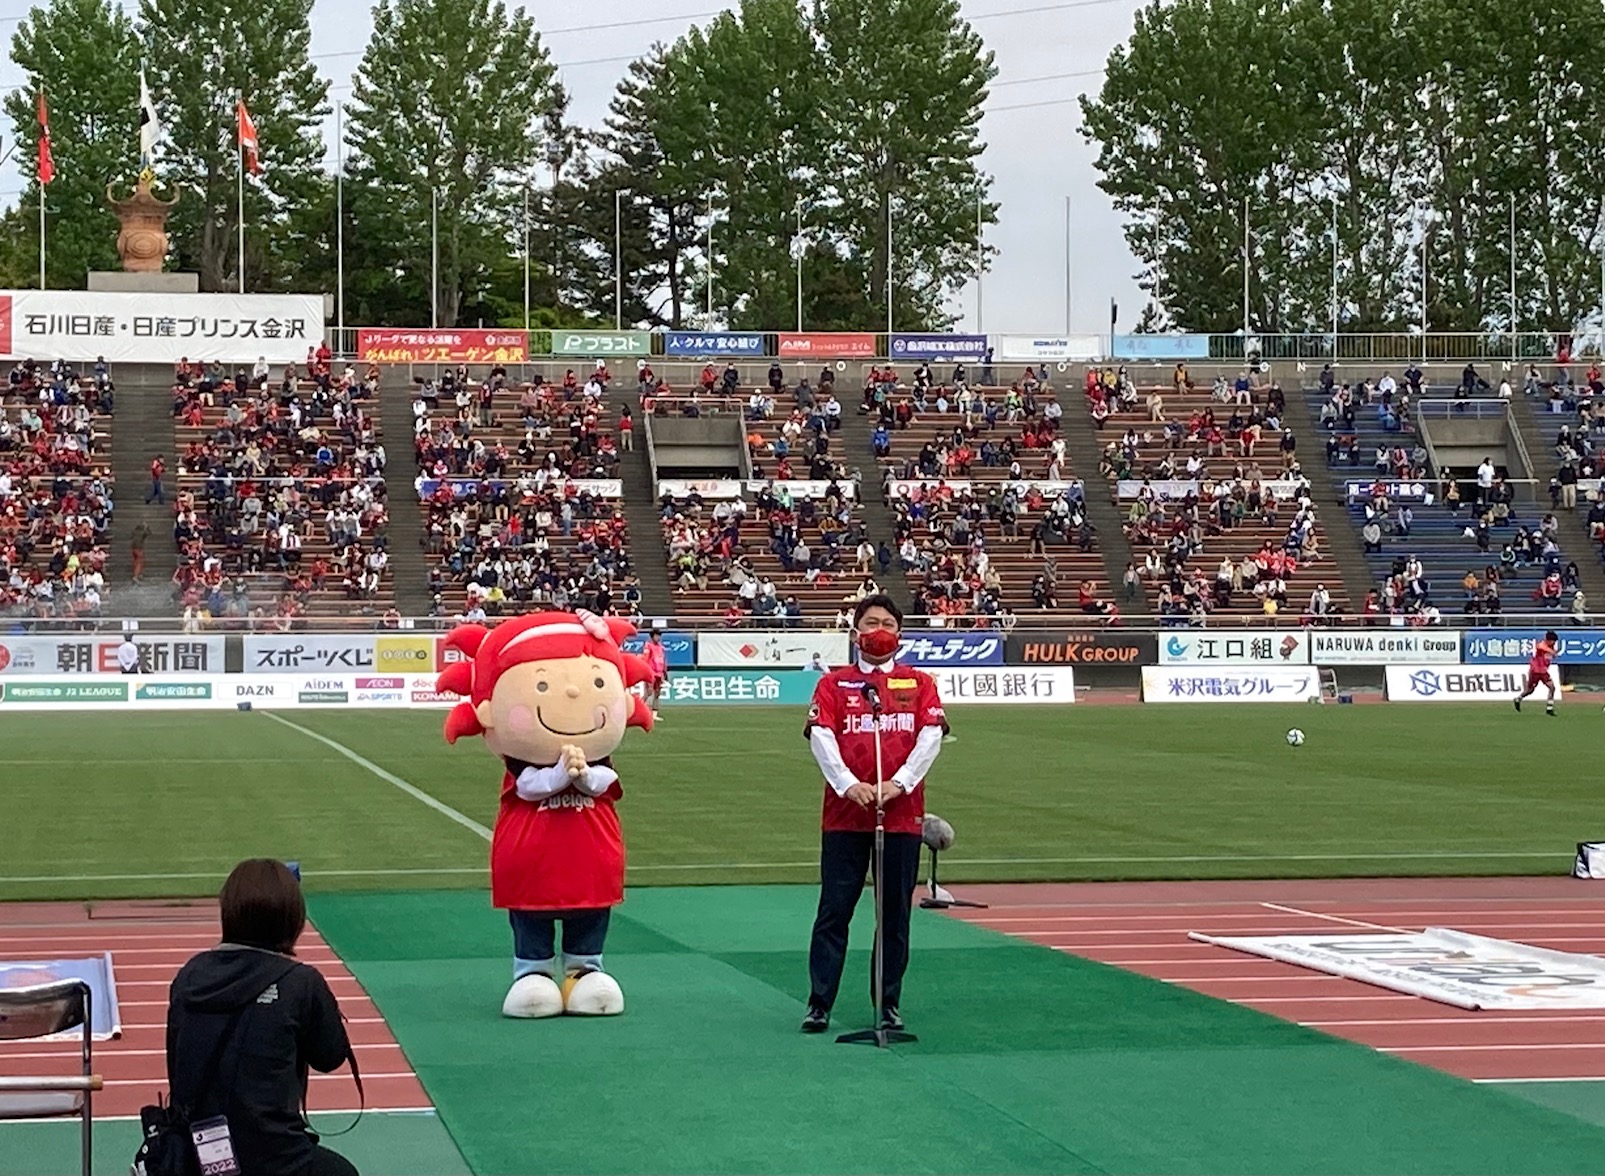 ツエーゲン金沢の試合でハーフタイムに挨拶をする村山市長とさかなざわさちこ